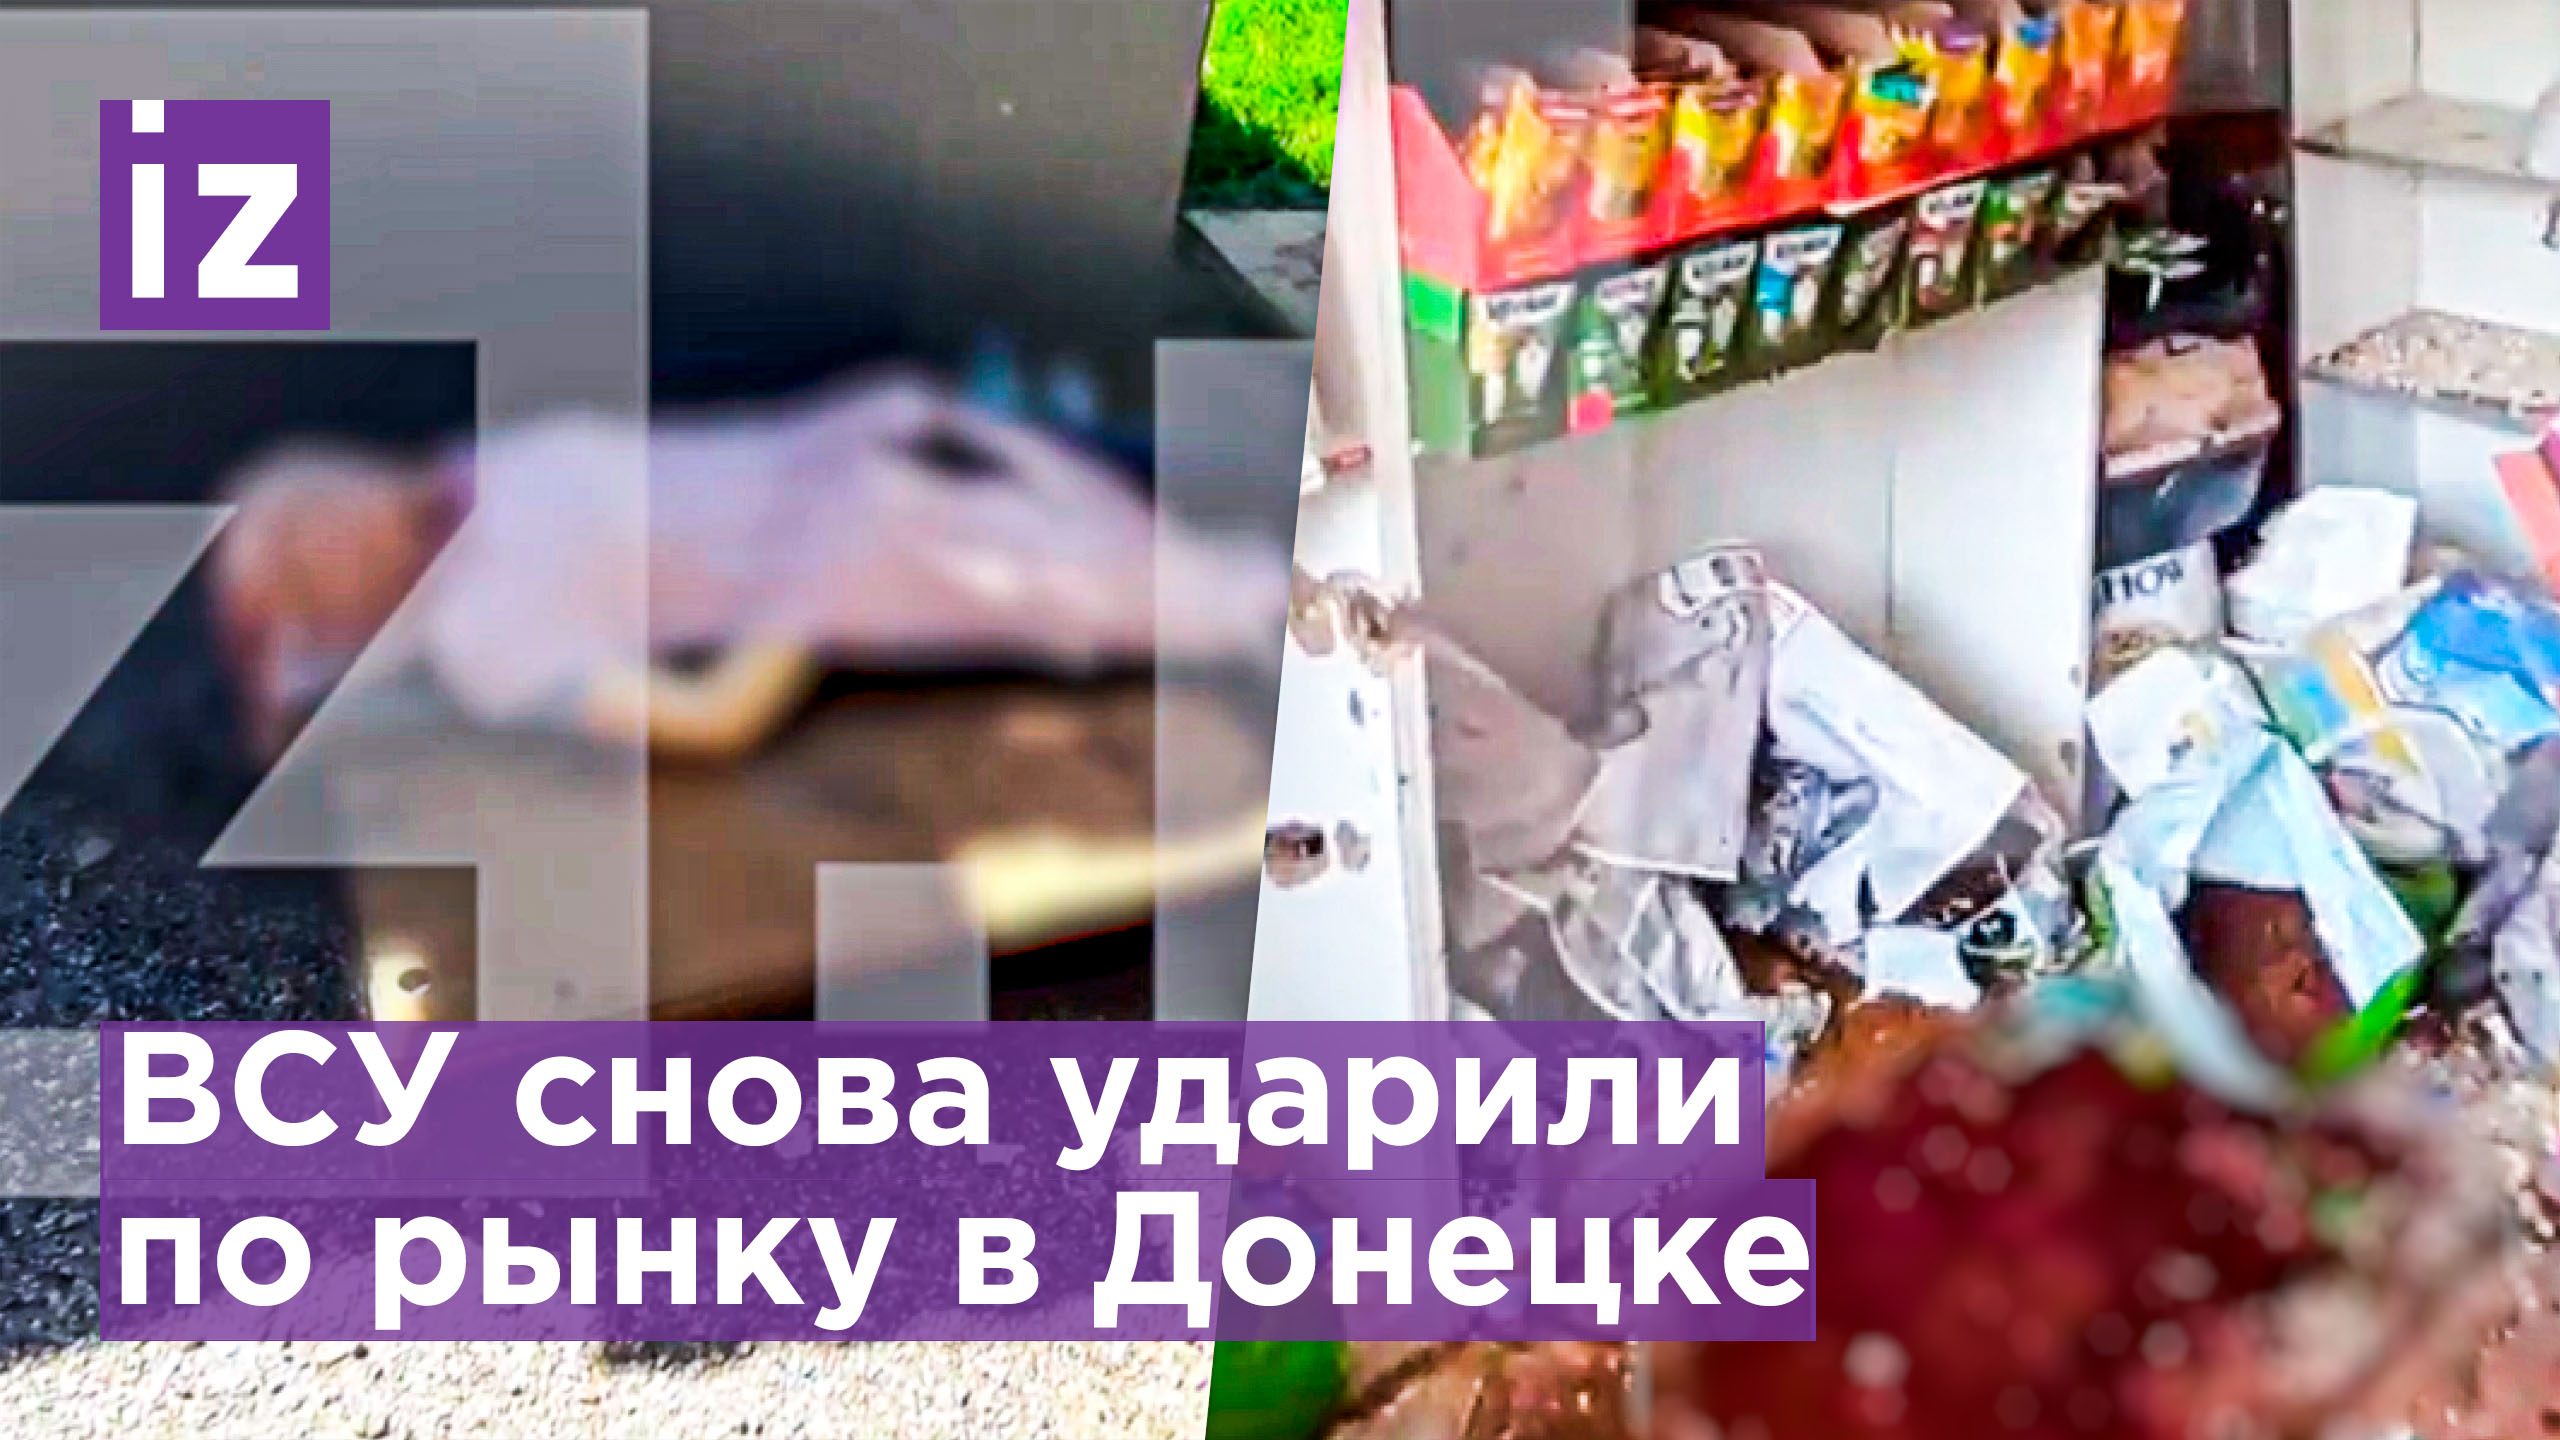 Двое погибших после обстрела ВСУ рынка в Донецке / Известия